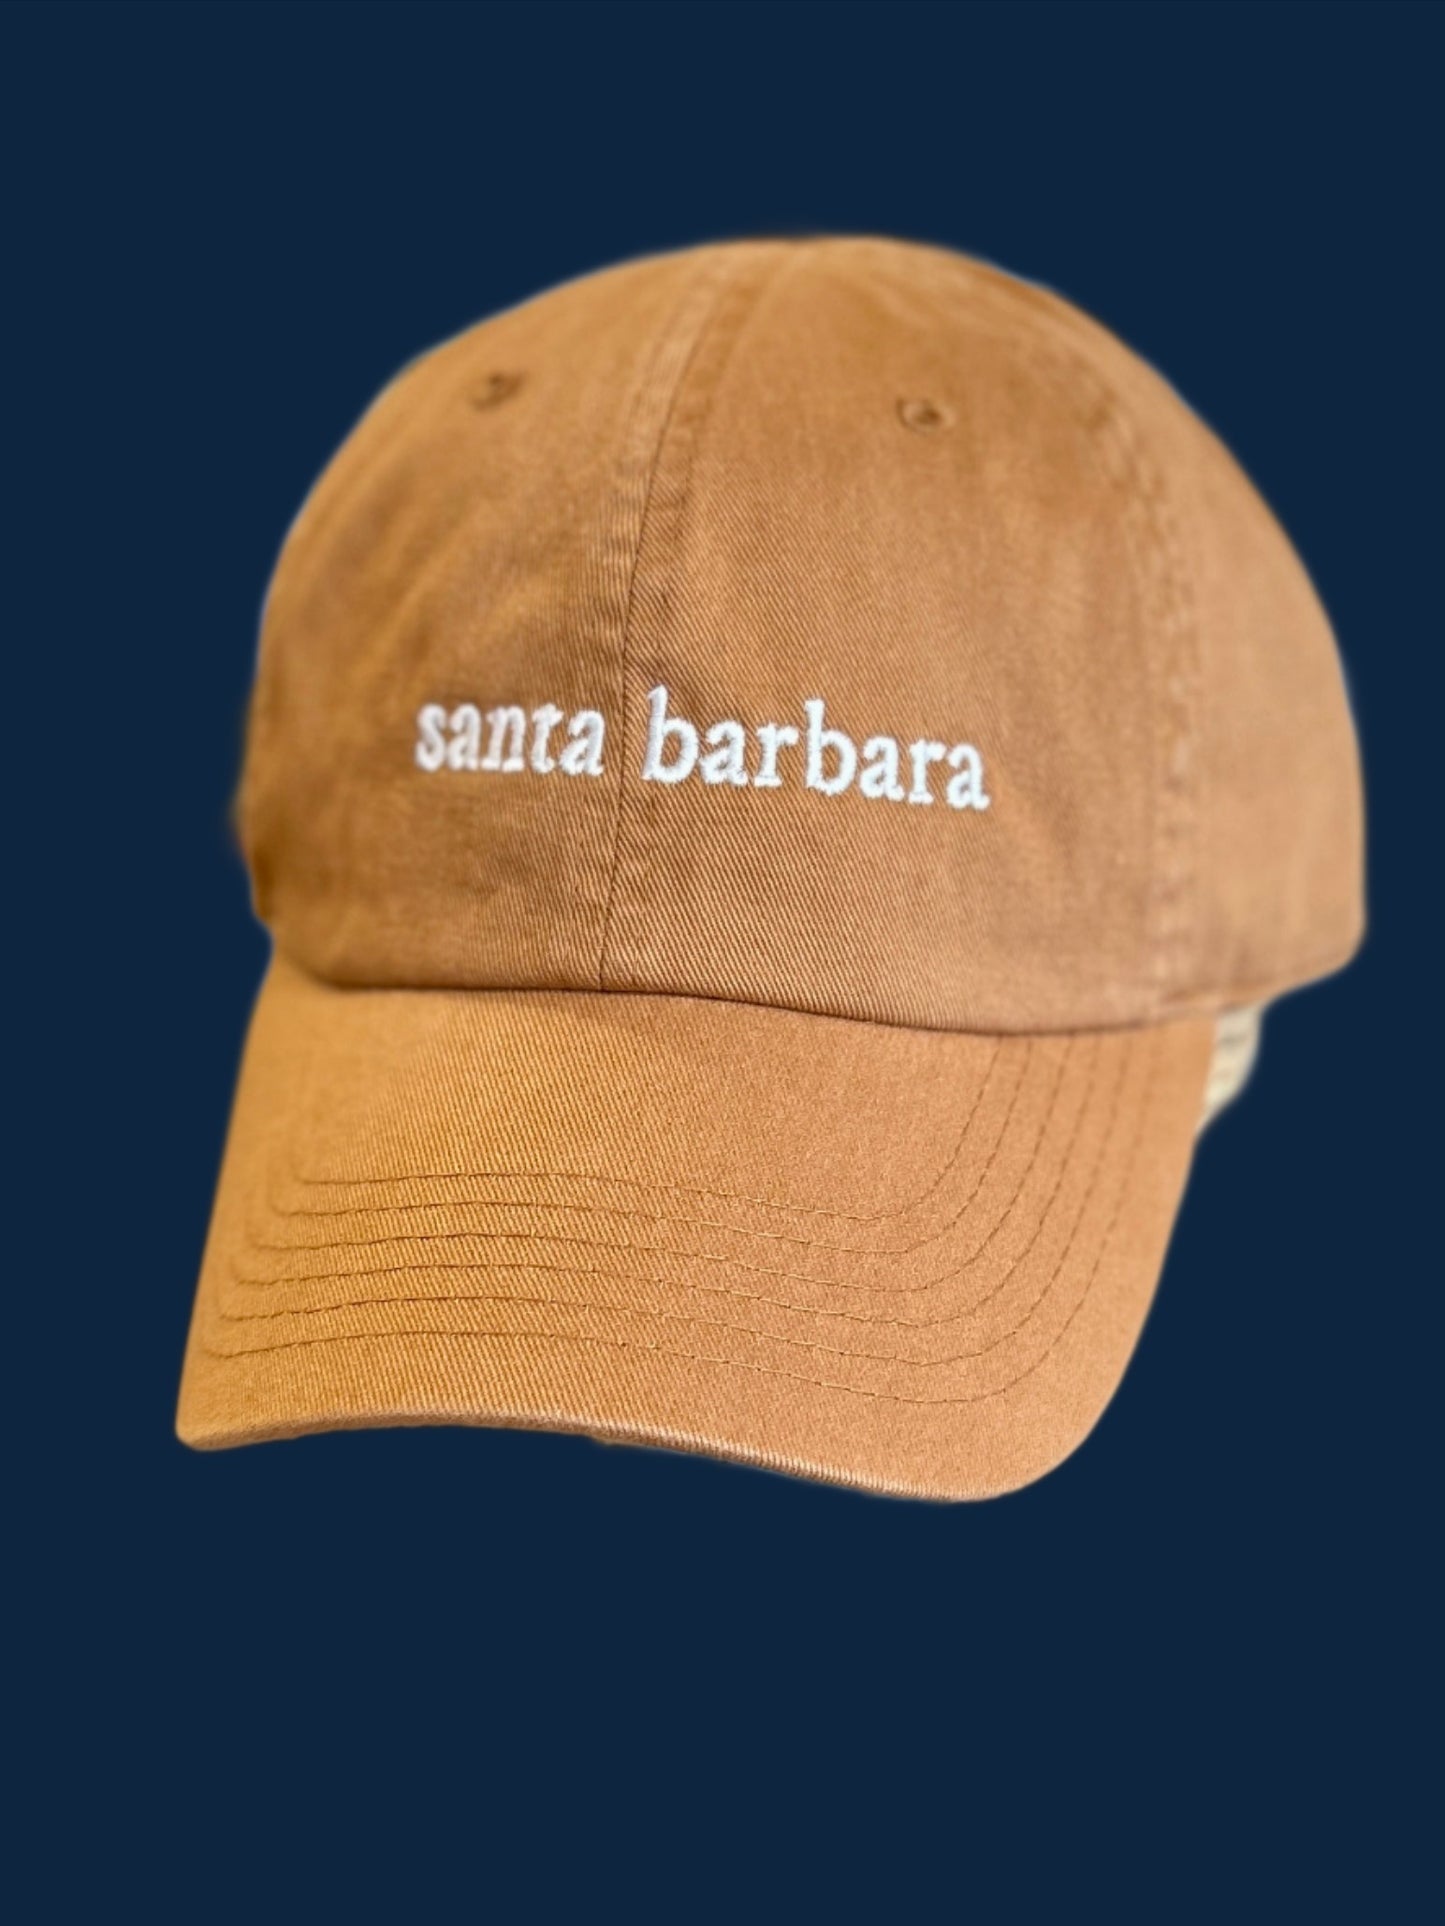 Santa Barbara Embroidered Baseball Cap